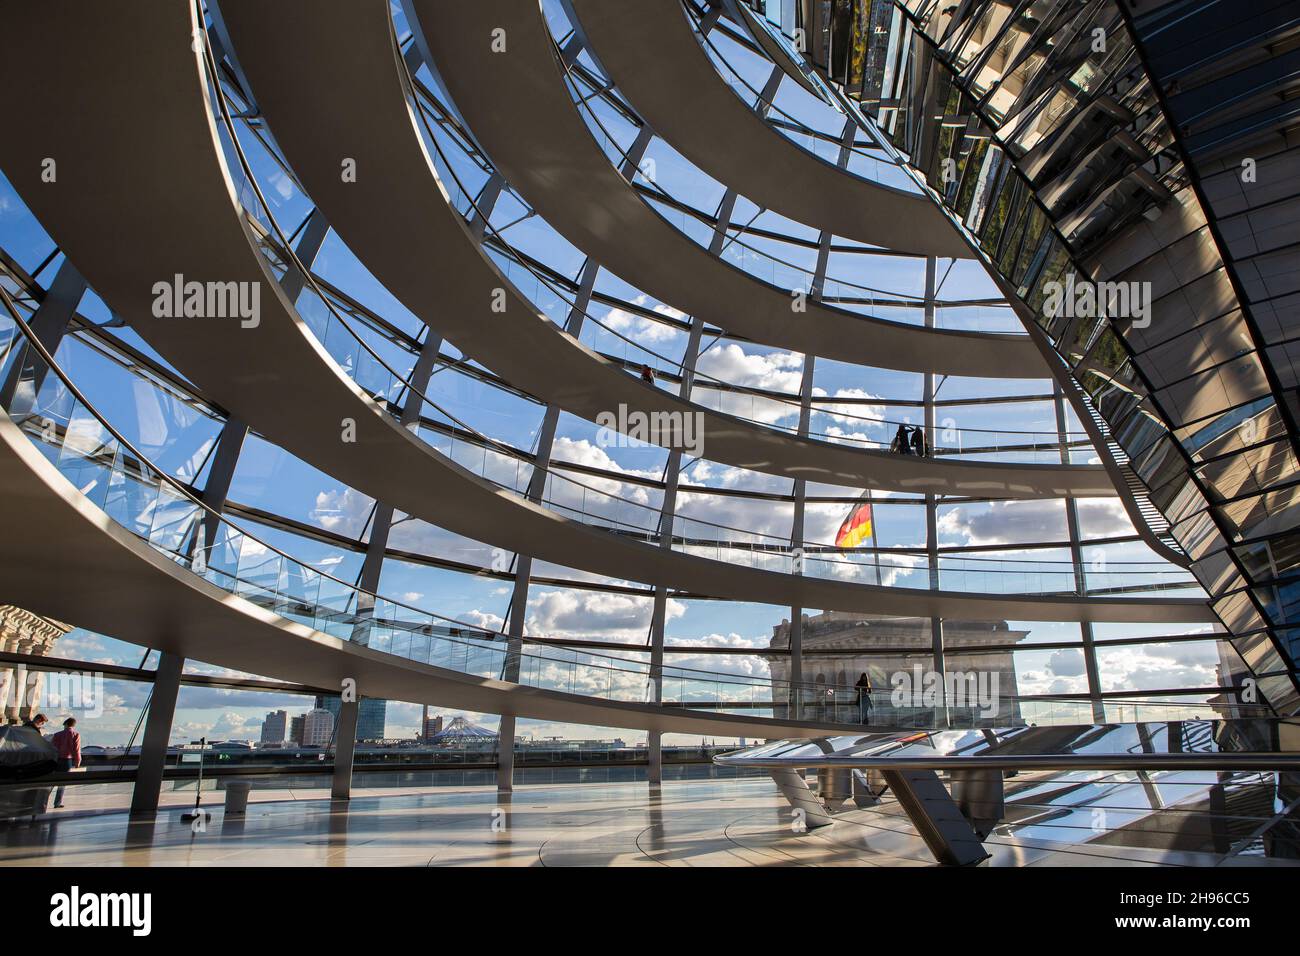 La cupola del Reichstag sul tetto del Bundestag tedesco a Berlino Mitte dall'interno. Architettura moderna in alluminio, vetro e specchi. Foto Stock